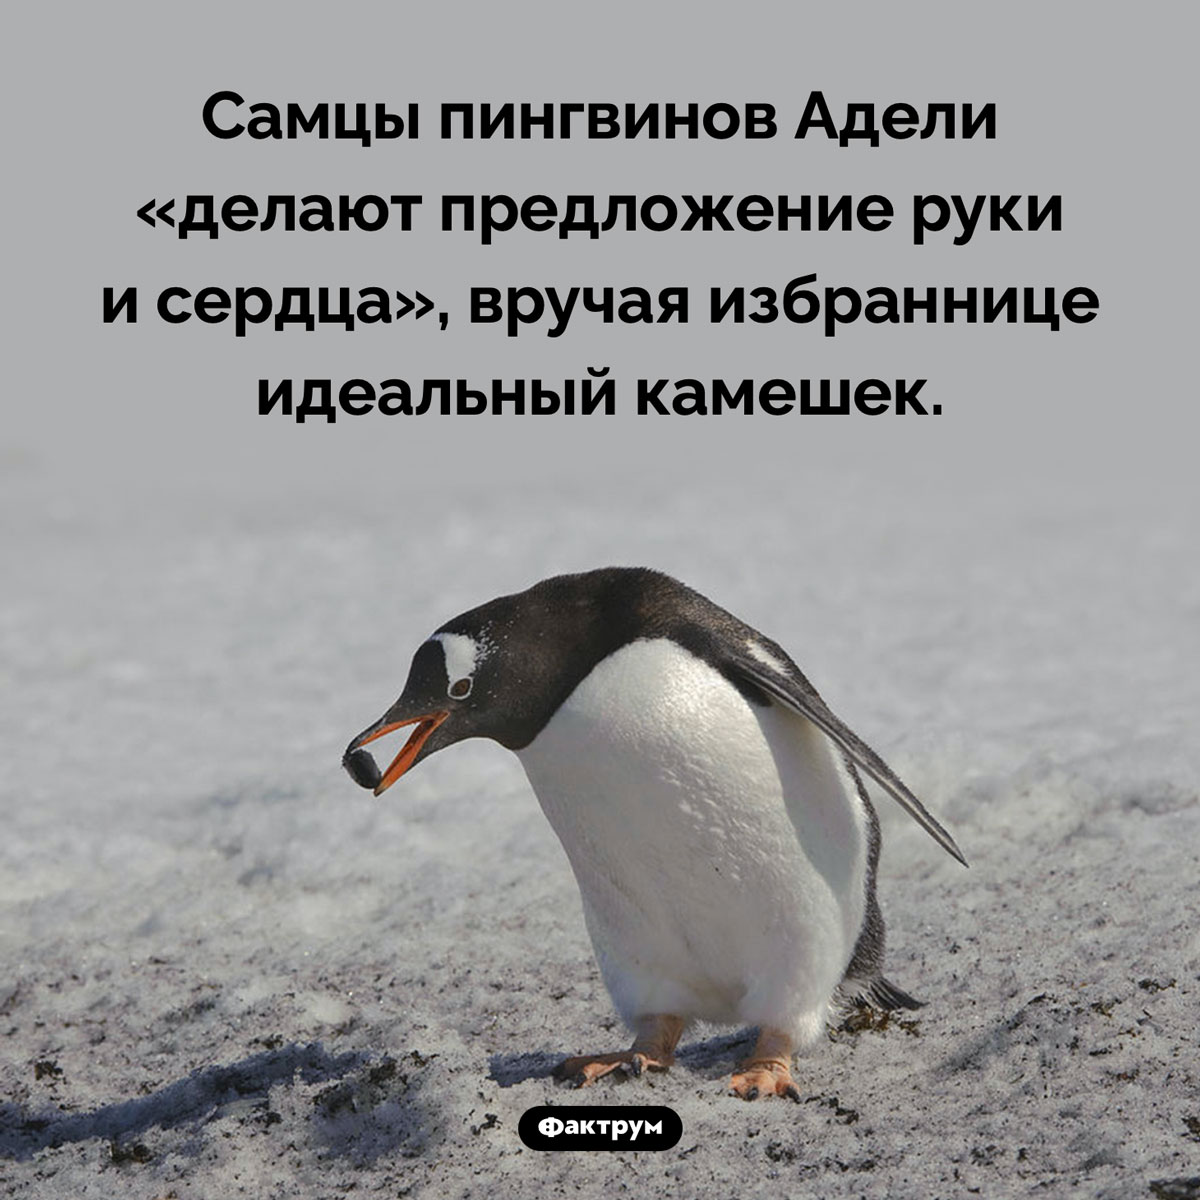 Идеальный камешек пингвина Адели. Самцы пингвинов Адели «делают предложение руки и сердца», вручая избраннице идеальный камешек.